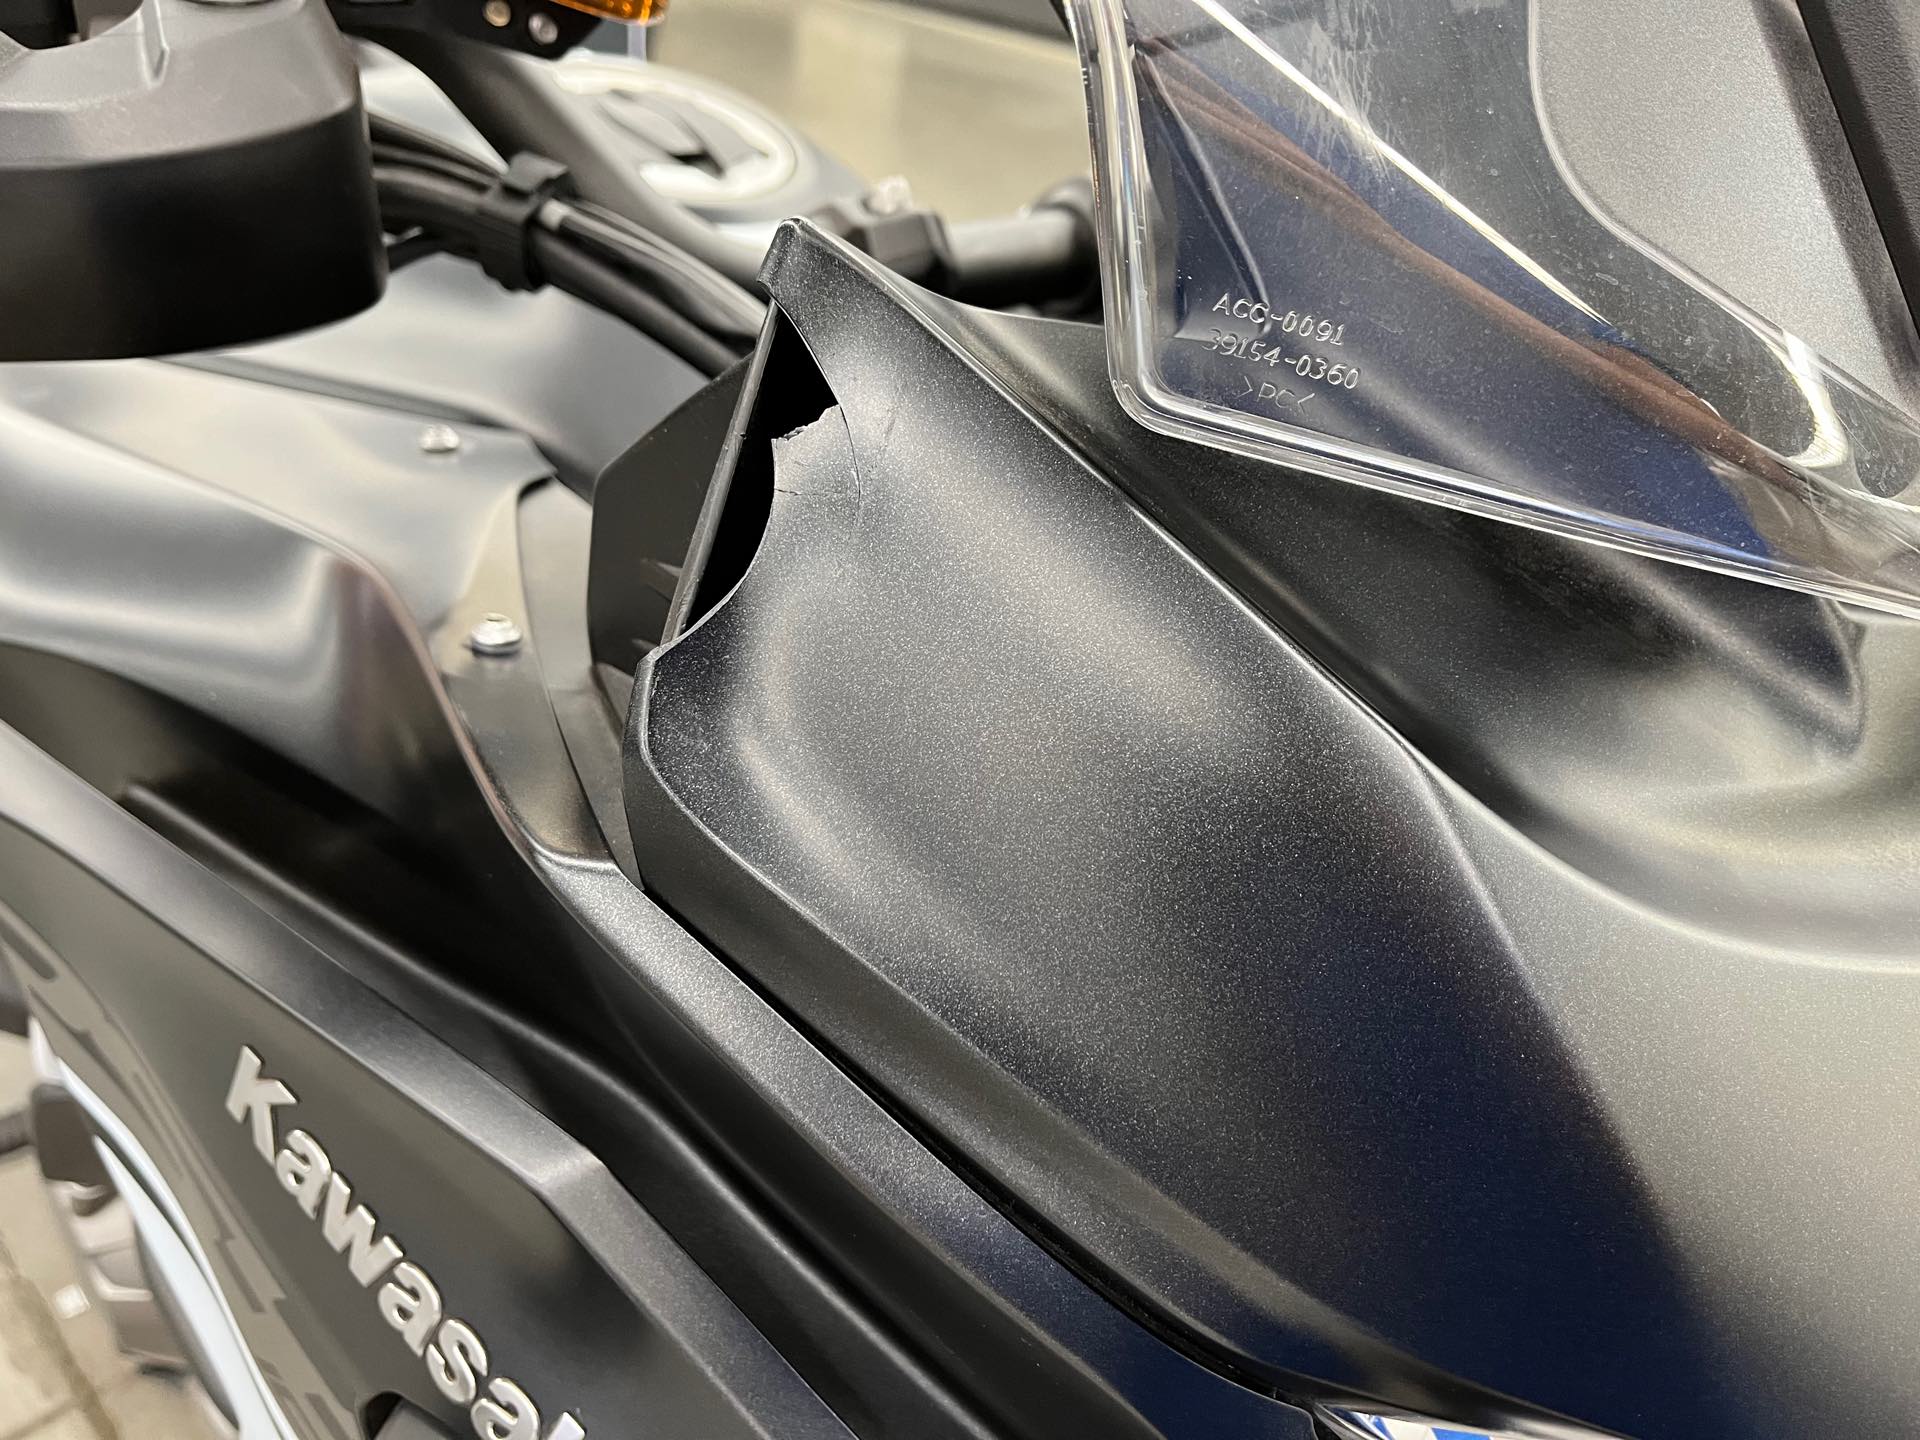 2019 Kawasaki Versys 1000 SE LT+ at Aces Motorcycles - Denver